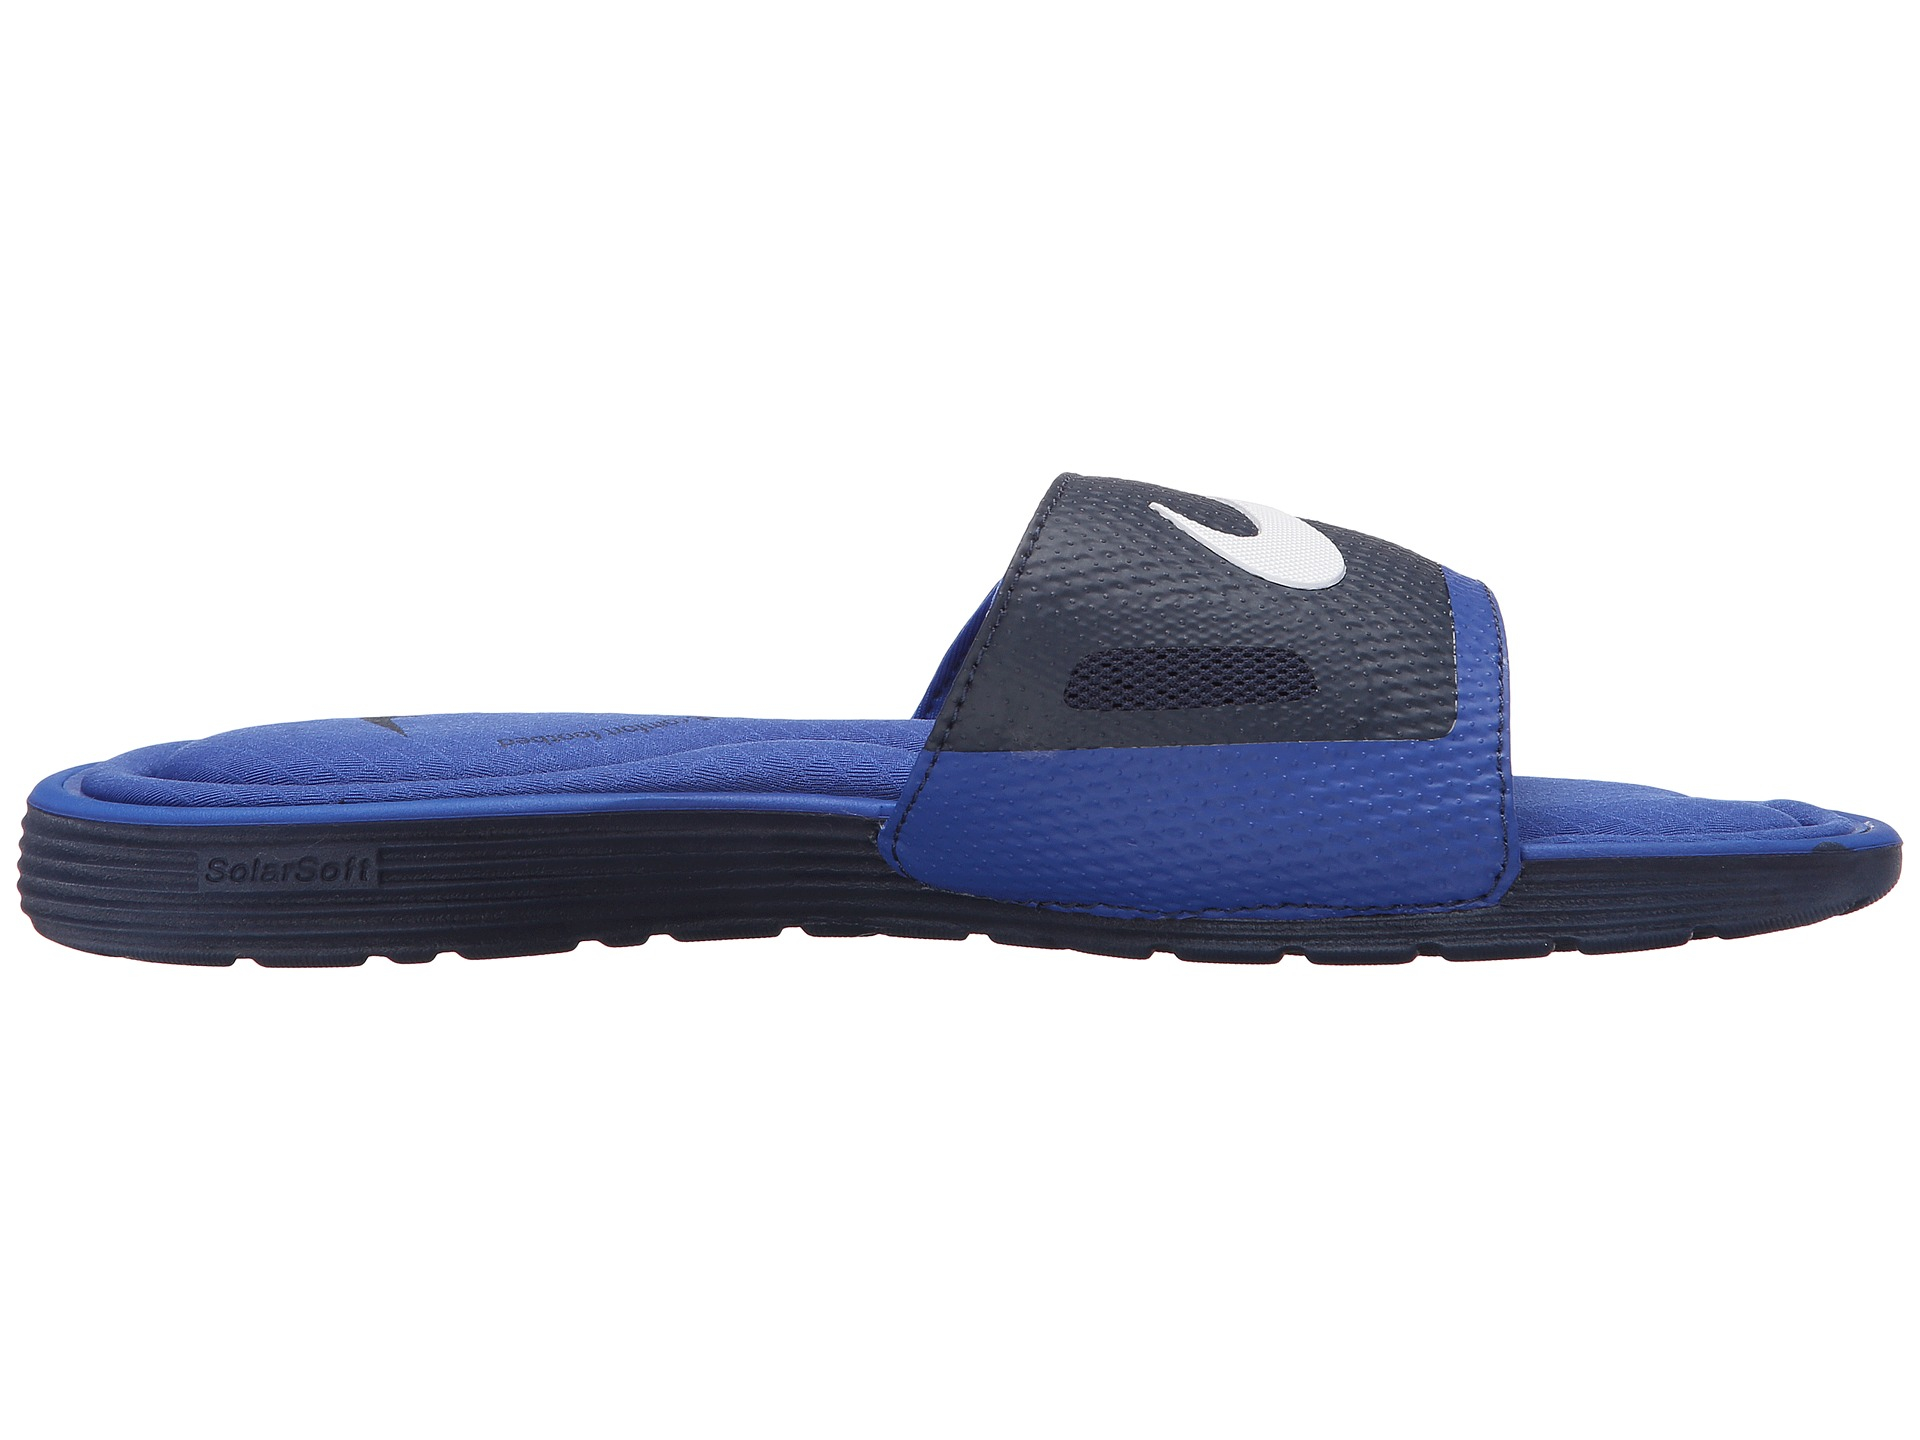 Lyst - Nike Solarsoft Comfort Slide in Blue for Men